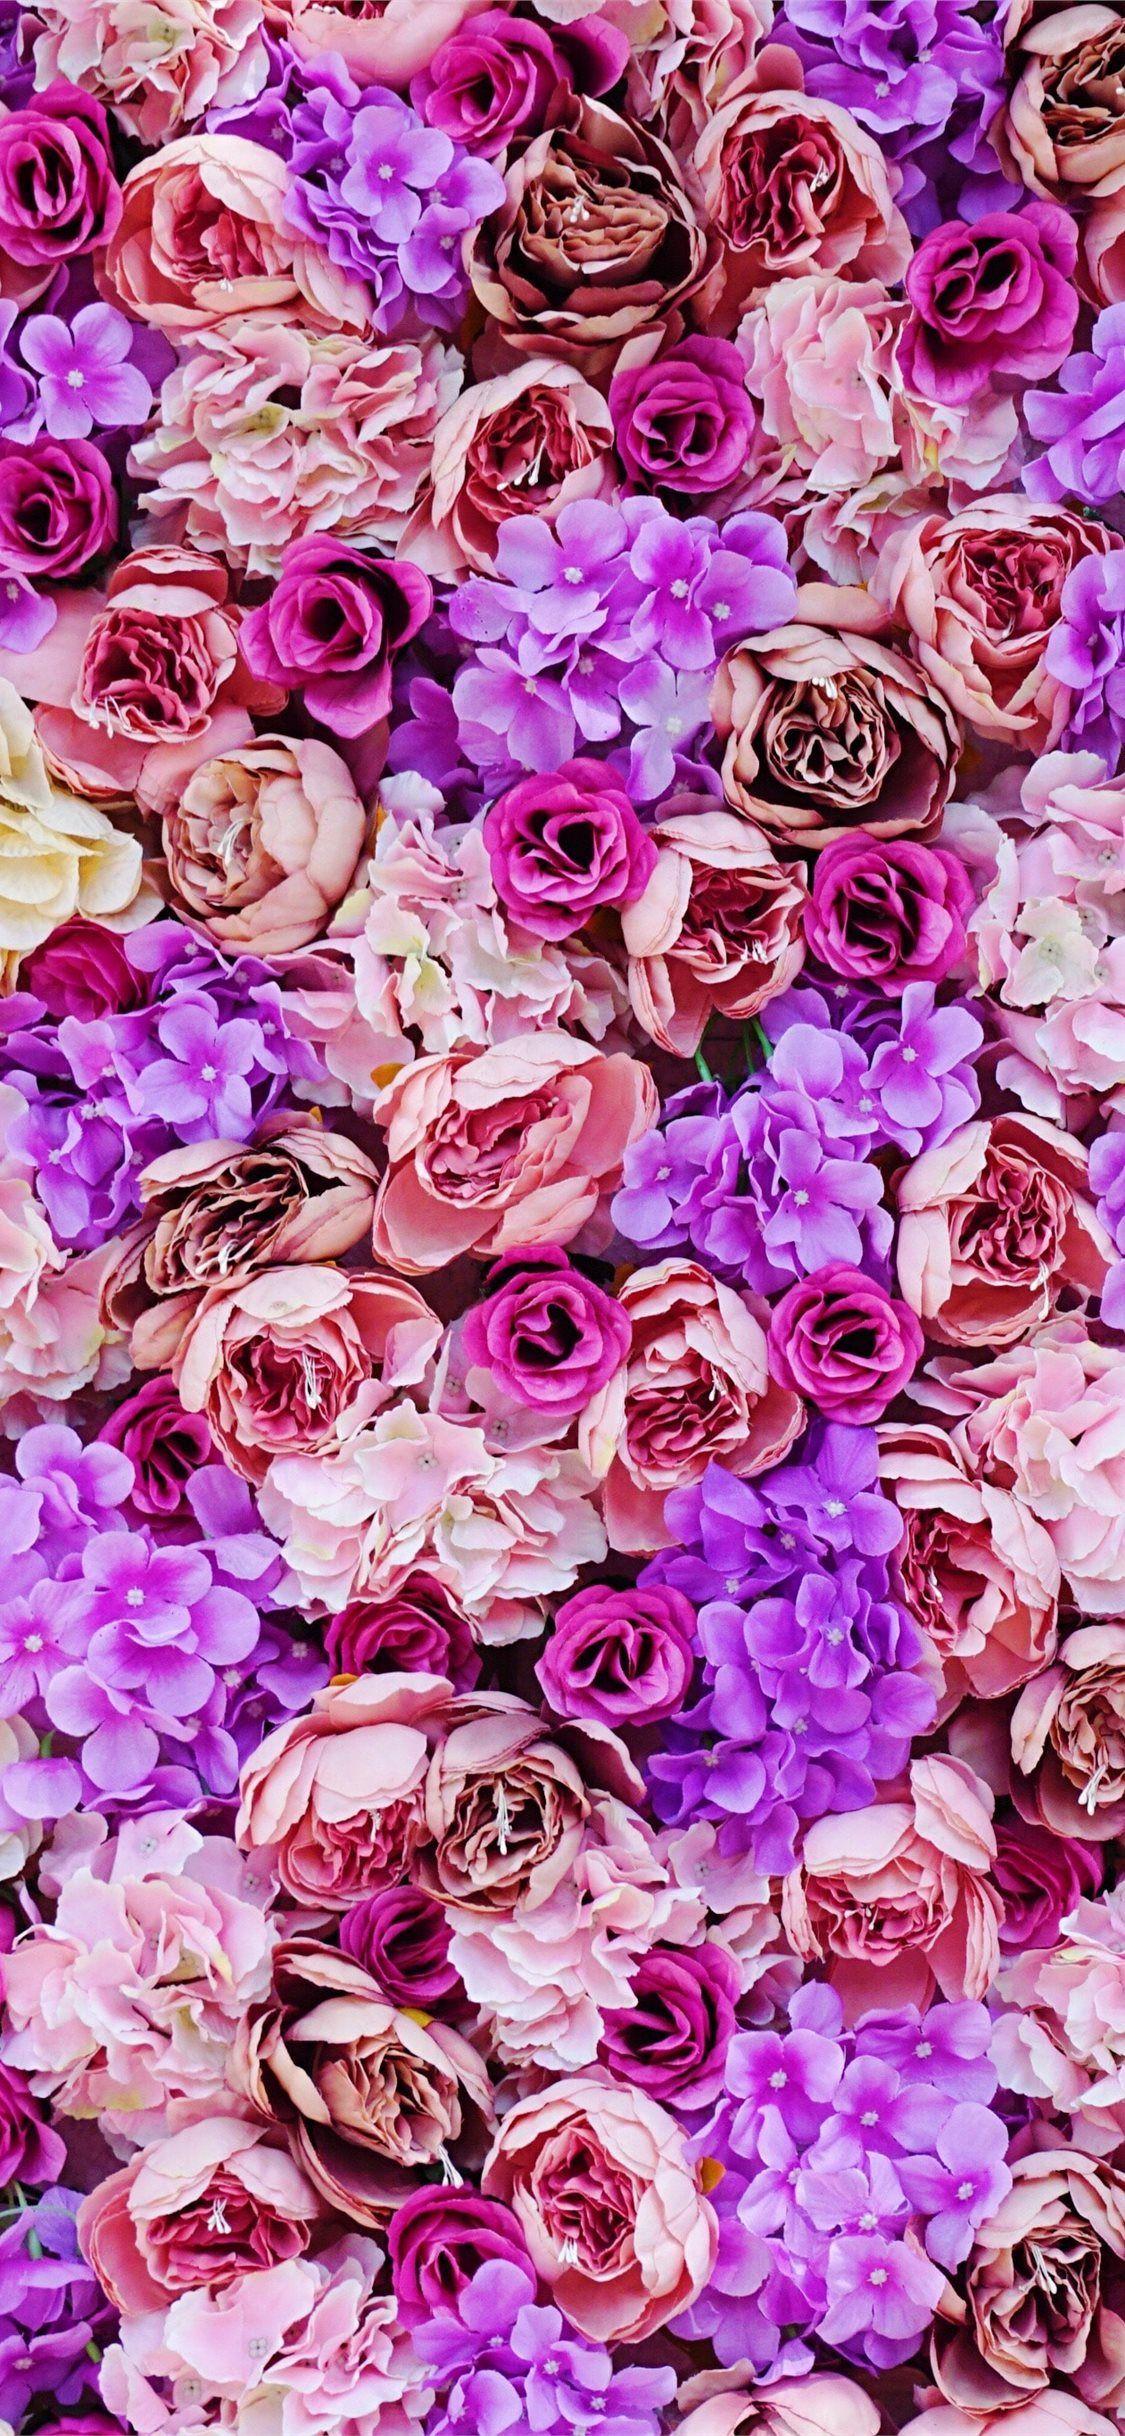 Khi bộ sưu tập hình nền hoa màu hồng và tím xuất hiện, bạn sẽ không thể khỏi ngỡ ngàng trước sự quyến rũ và đầy sức sống của các bông hoa. Điều này chắc chắn sẽ khiến bạn muốn đắm mình trong không gian mộng mơ, thư thái sau những giờ làm việc căng thẳng.